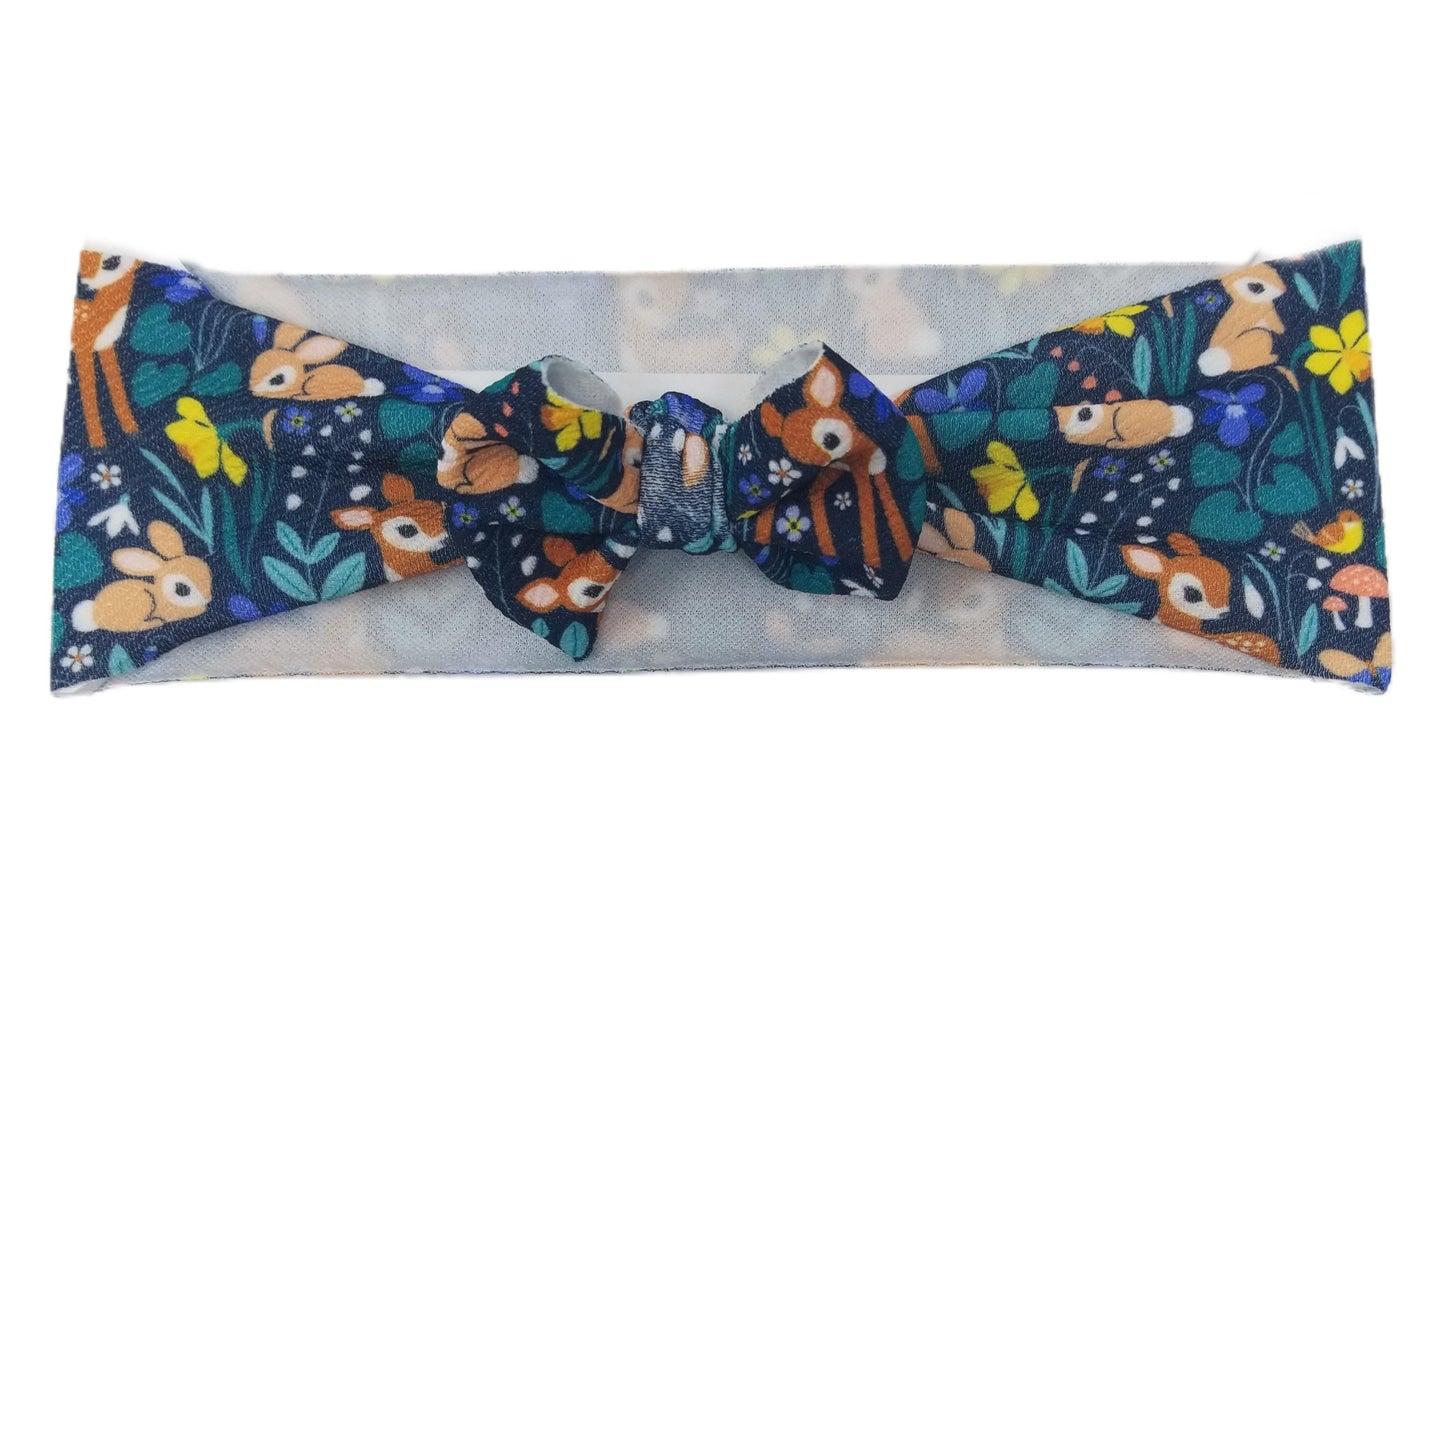 3 inch Fawn & Bunny Fabric Bow Headwrap